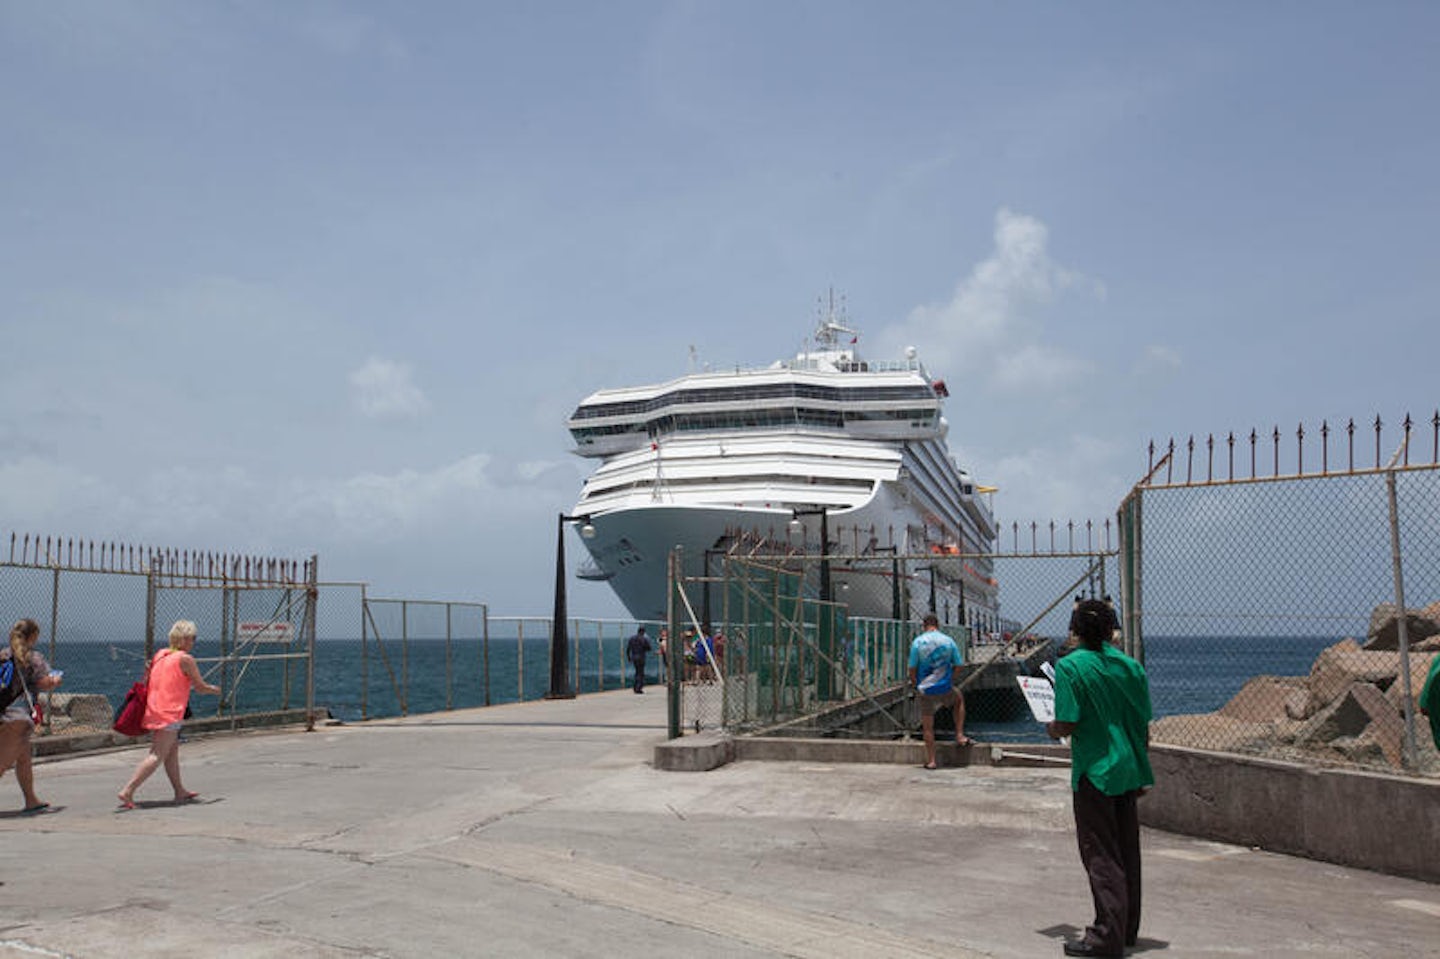 St. Kitts Port